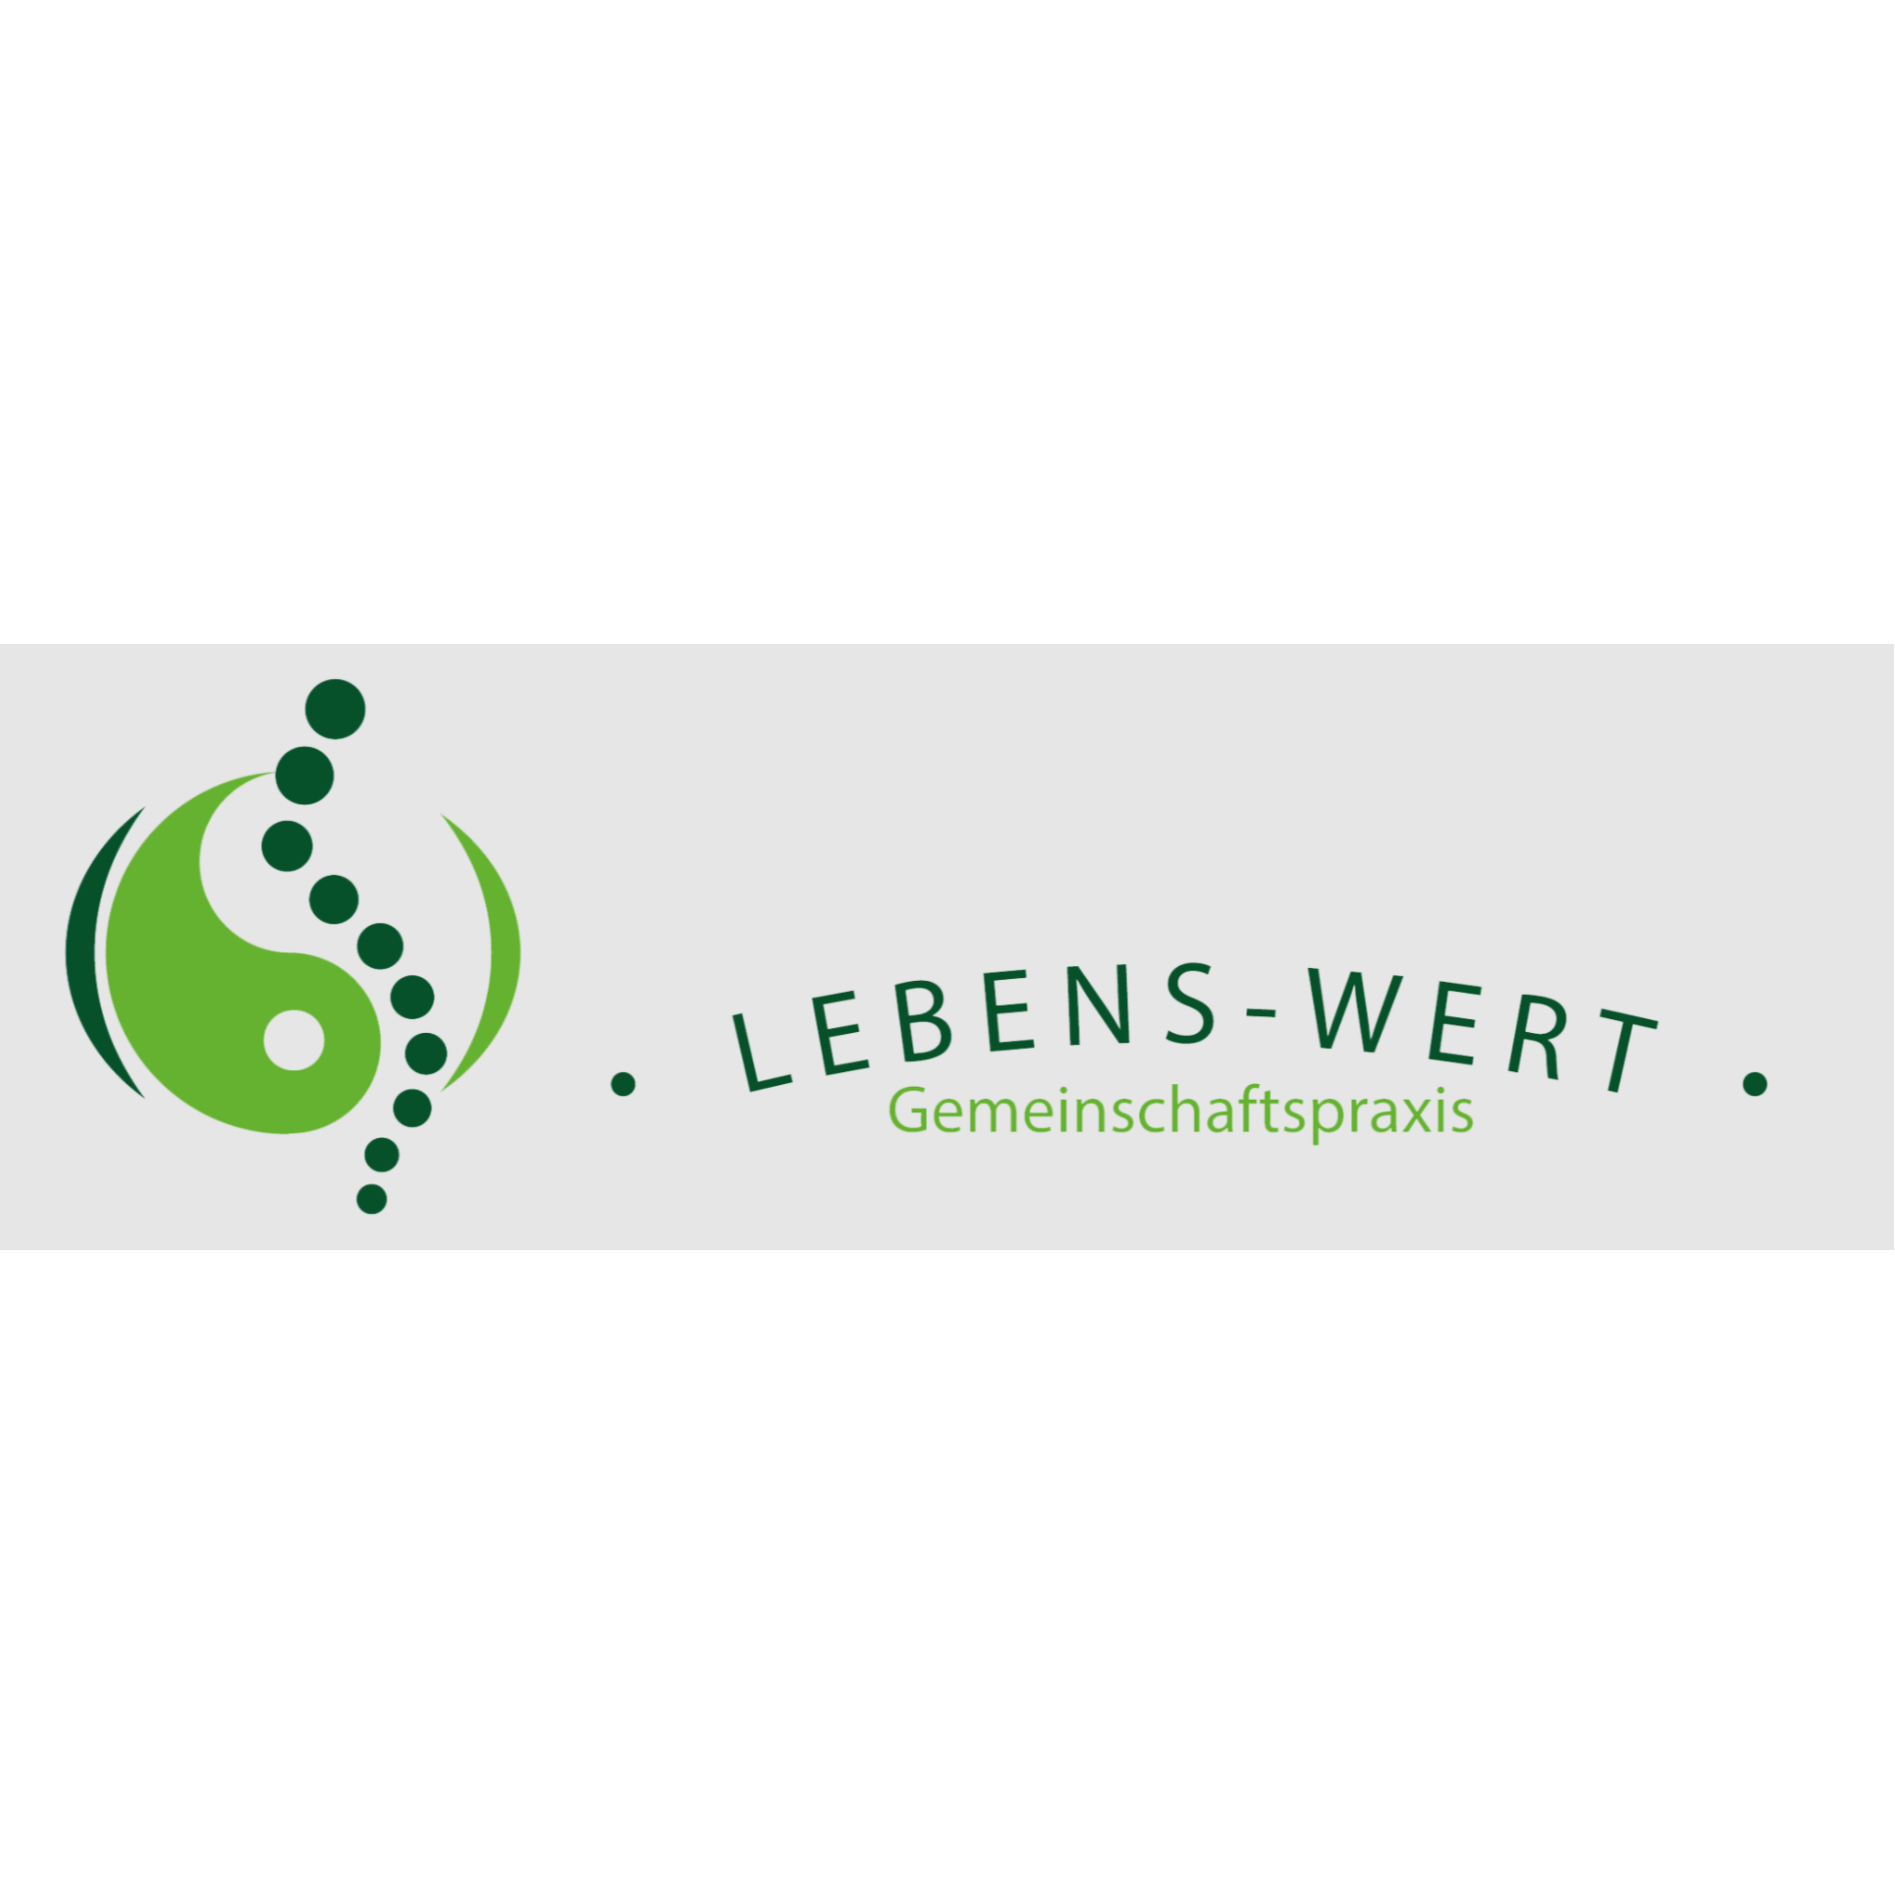 Logo Gemeinschftspraxis "LEBENS-WERT"